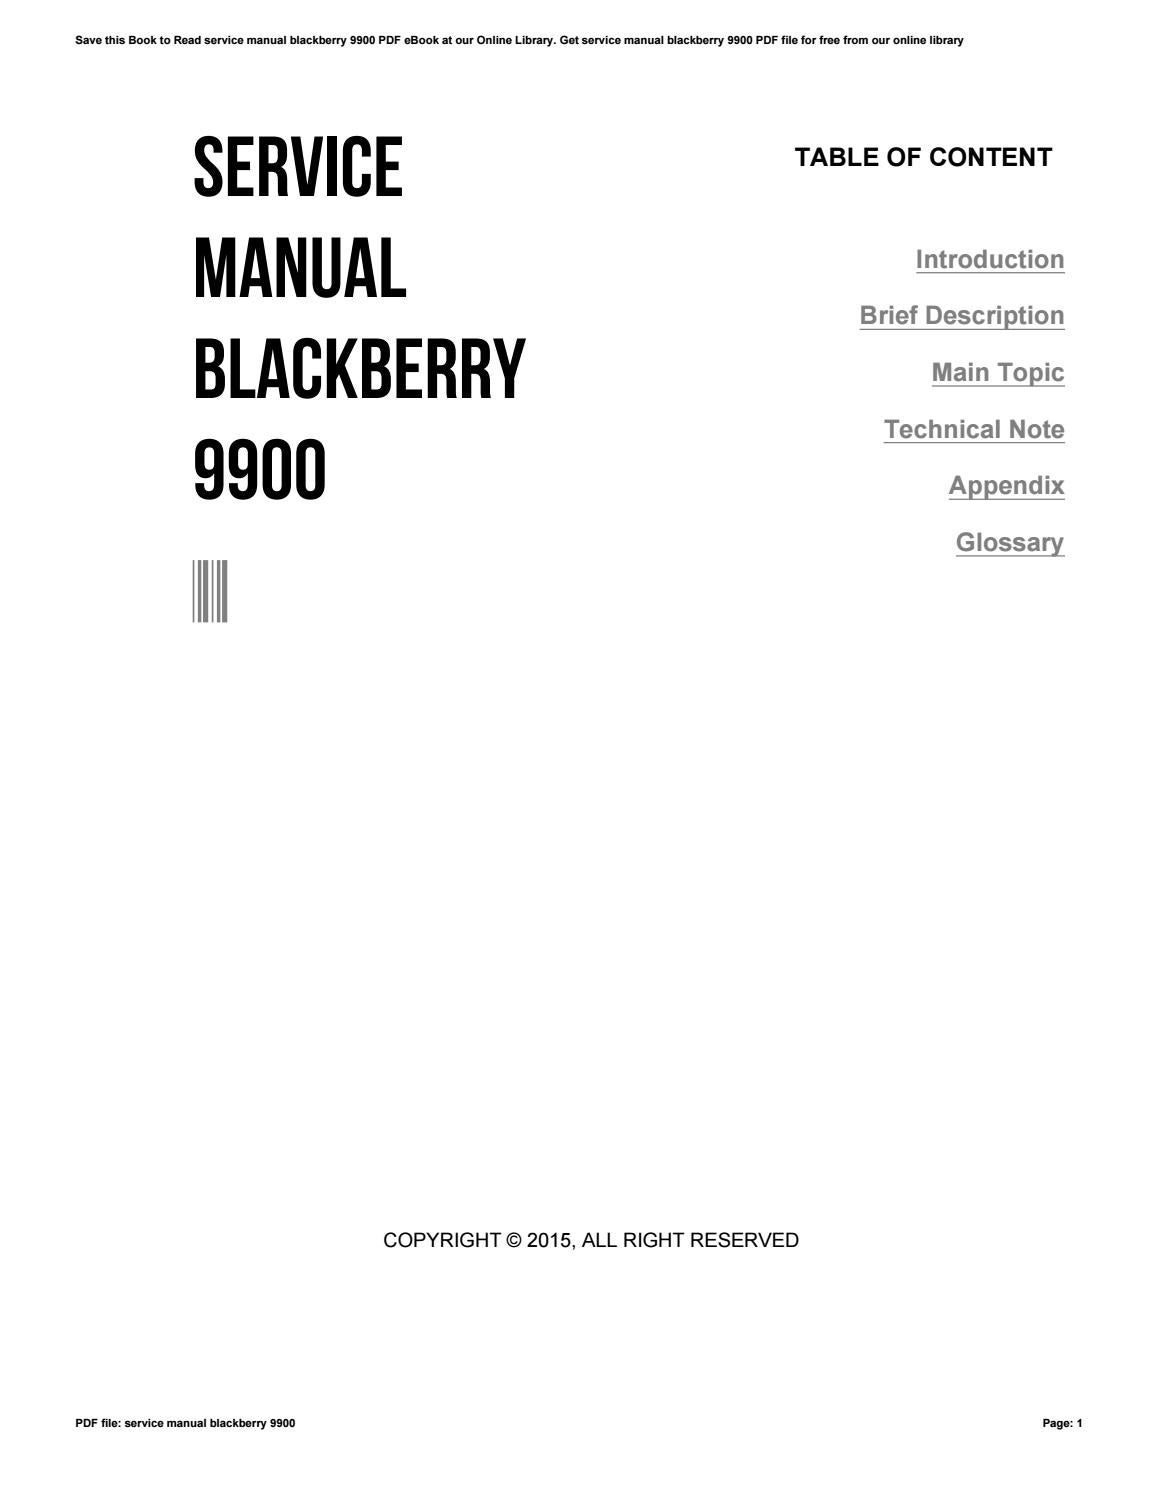 Nie znaleziono informacji o wynajmie usługi blackberry 9900